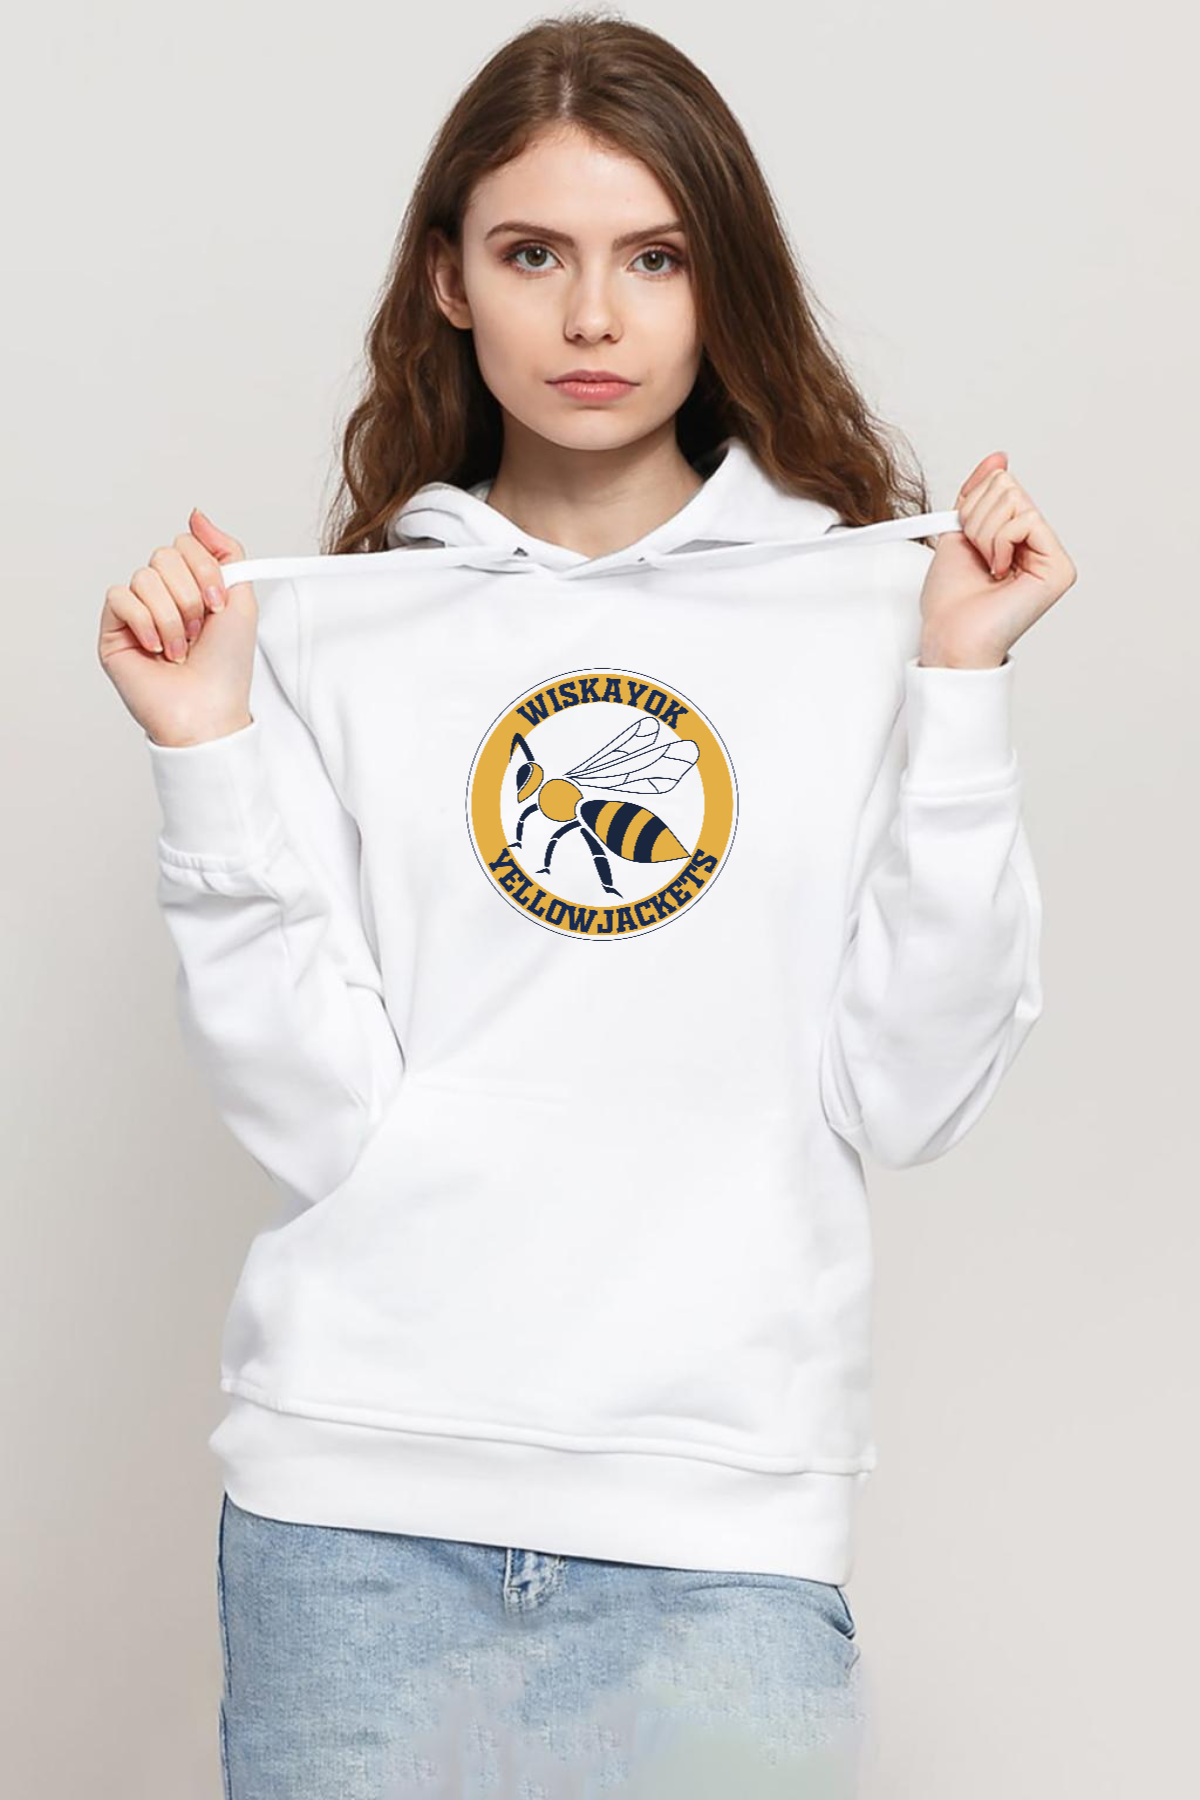 Wiskayok Yellowjackets Logo Beyaz Kadın 3ip Kapşonlu Sweatshirt